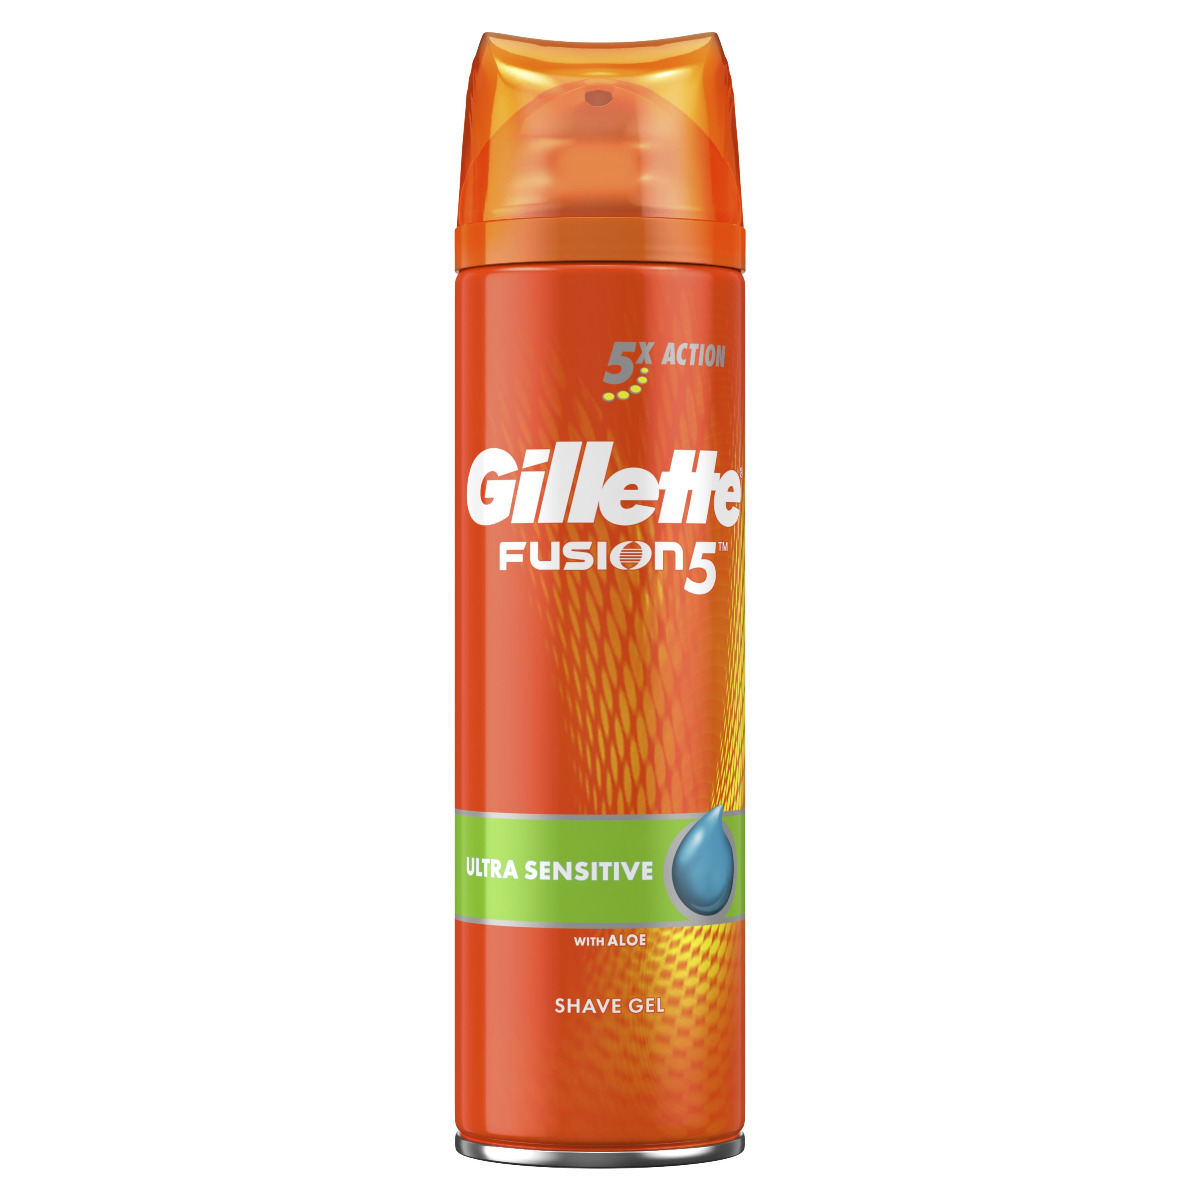 Gillette Fusion5 Ultra Sensitive pánský gel na holení 200 ml Gillette